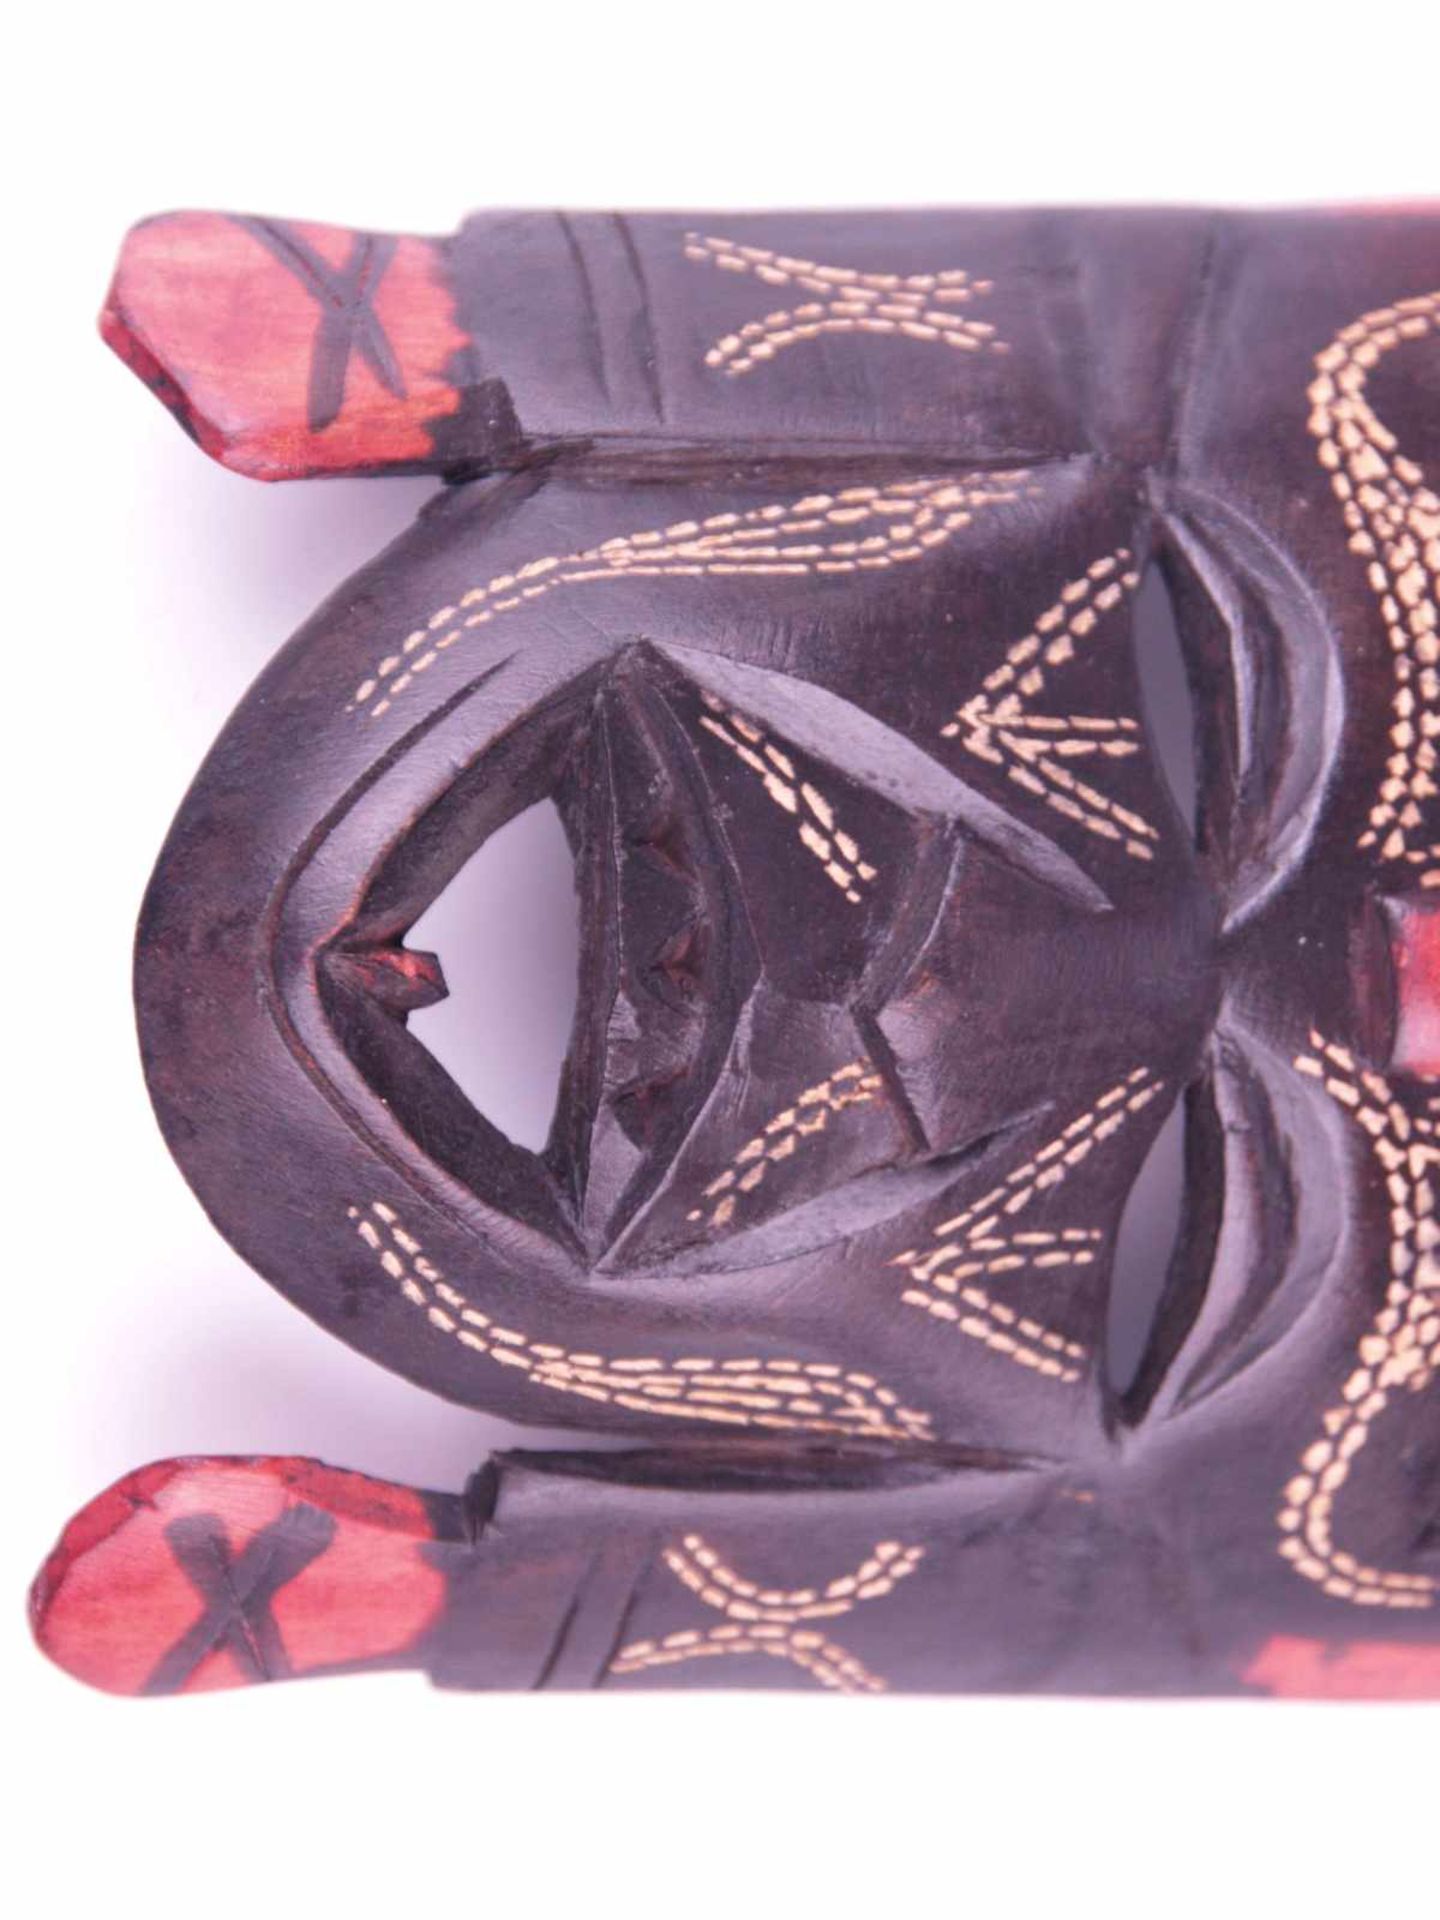 Gesichtsmaske- Kenia, Holz geschnitzt, schwarz/rot bemalt, rückseitig im Schnitt bez. "Jambo Kenya - Bild 3 aus 4